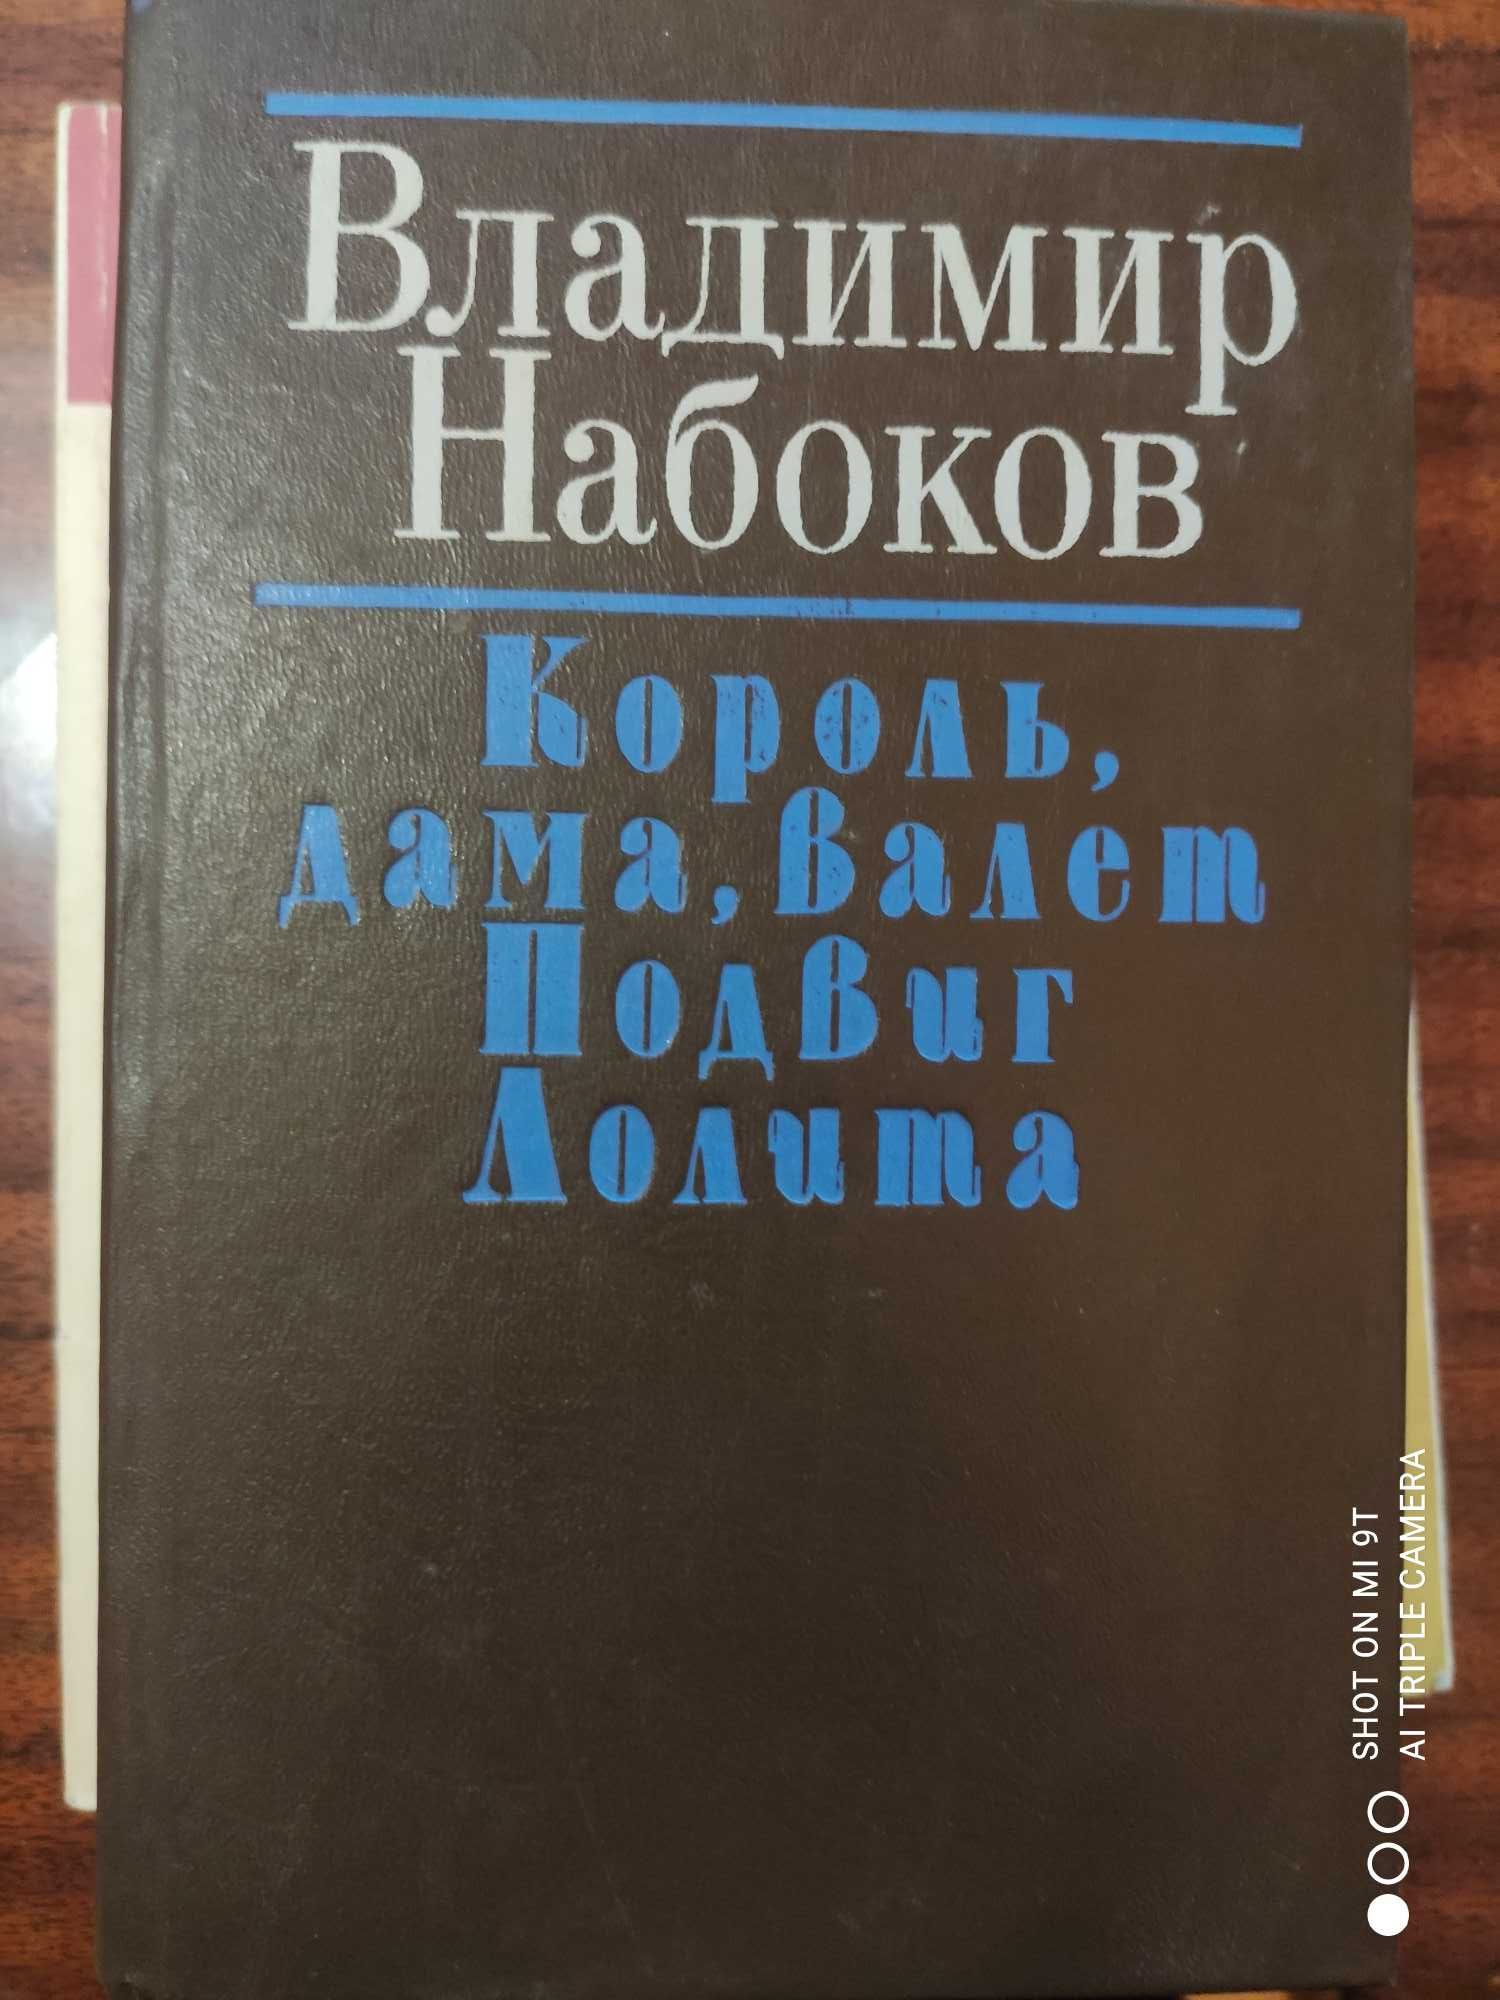 Книги по экранизации культовых фильмов СССР